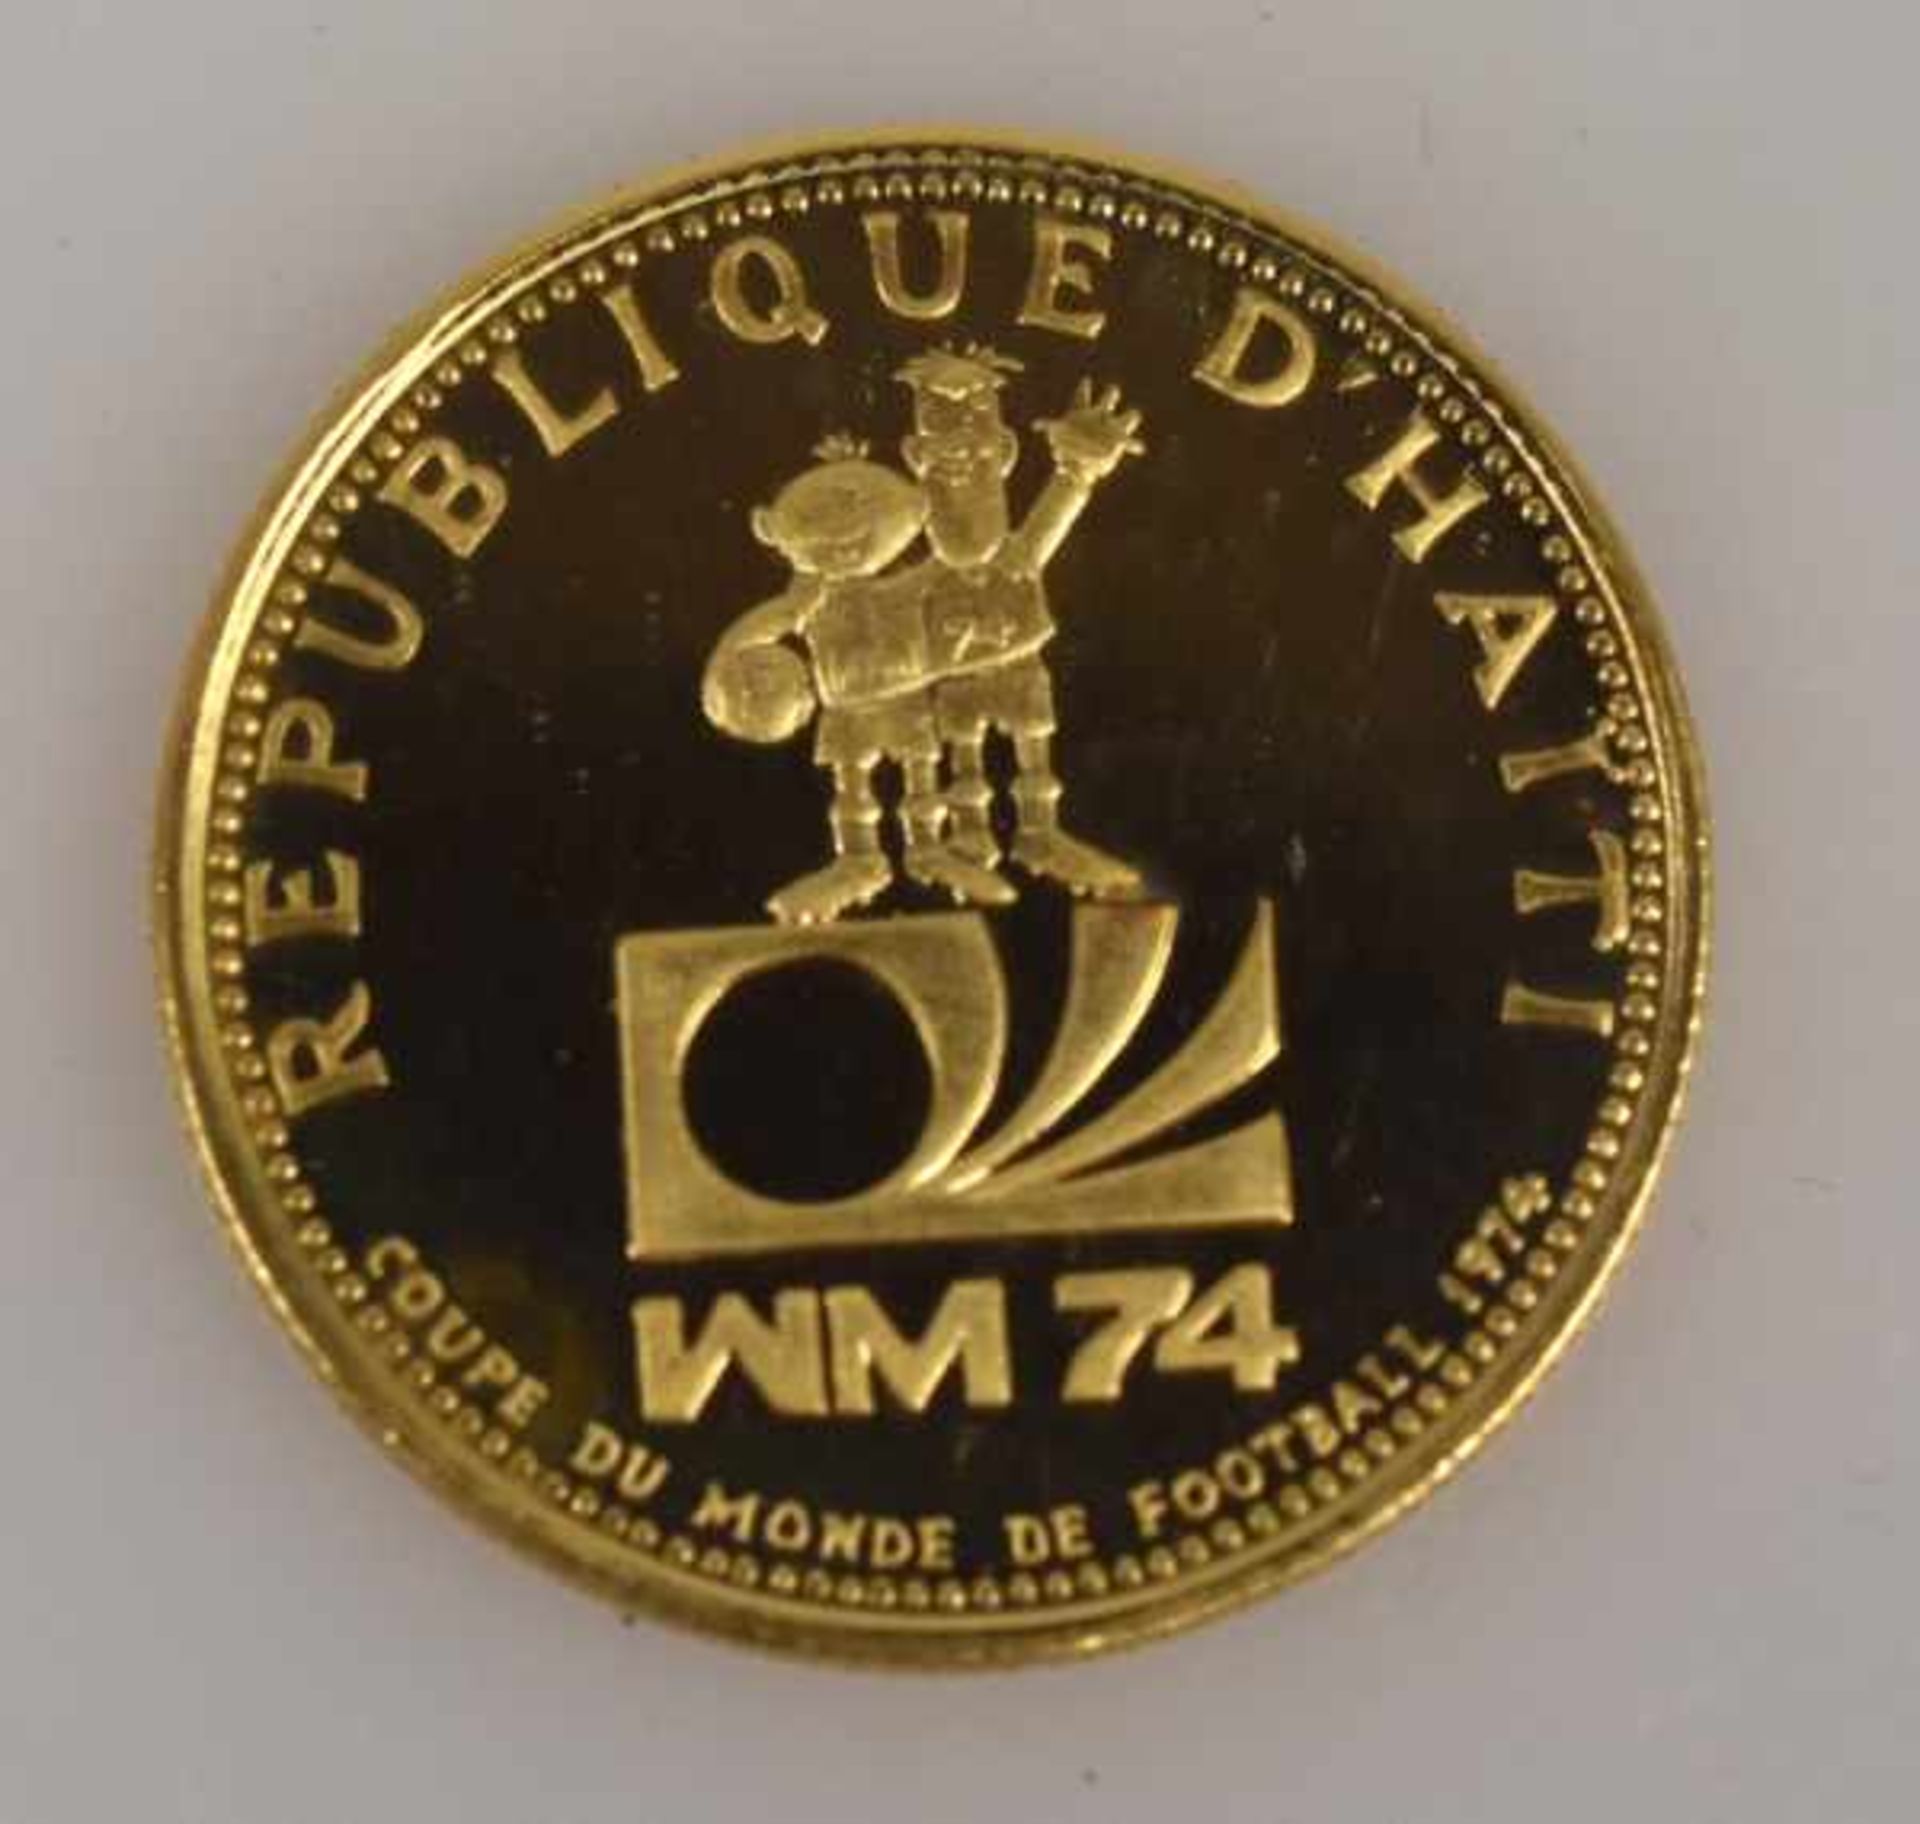 MÜNZEN-LOT 1 Münzanhänger mit Münze 10Fr. Schweiz Nachprägung in Fassung 14ct, 8,3g -1 Goldmünze 200 - Bild 4 aus 17